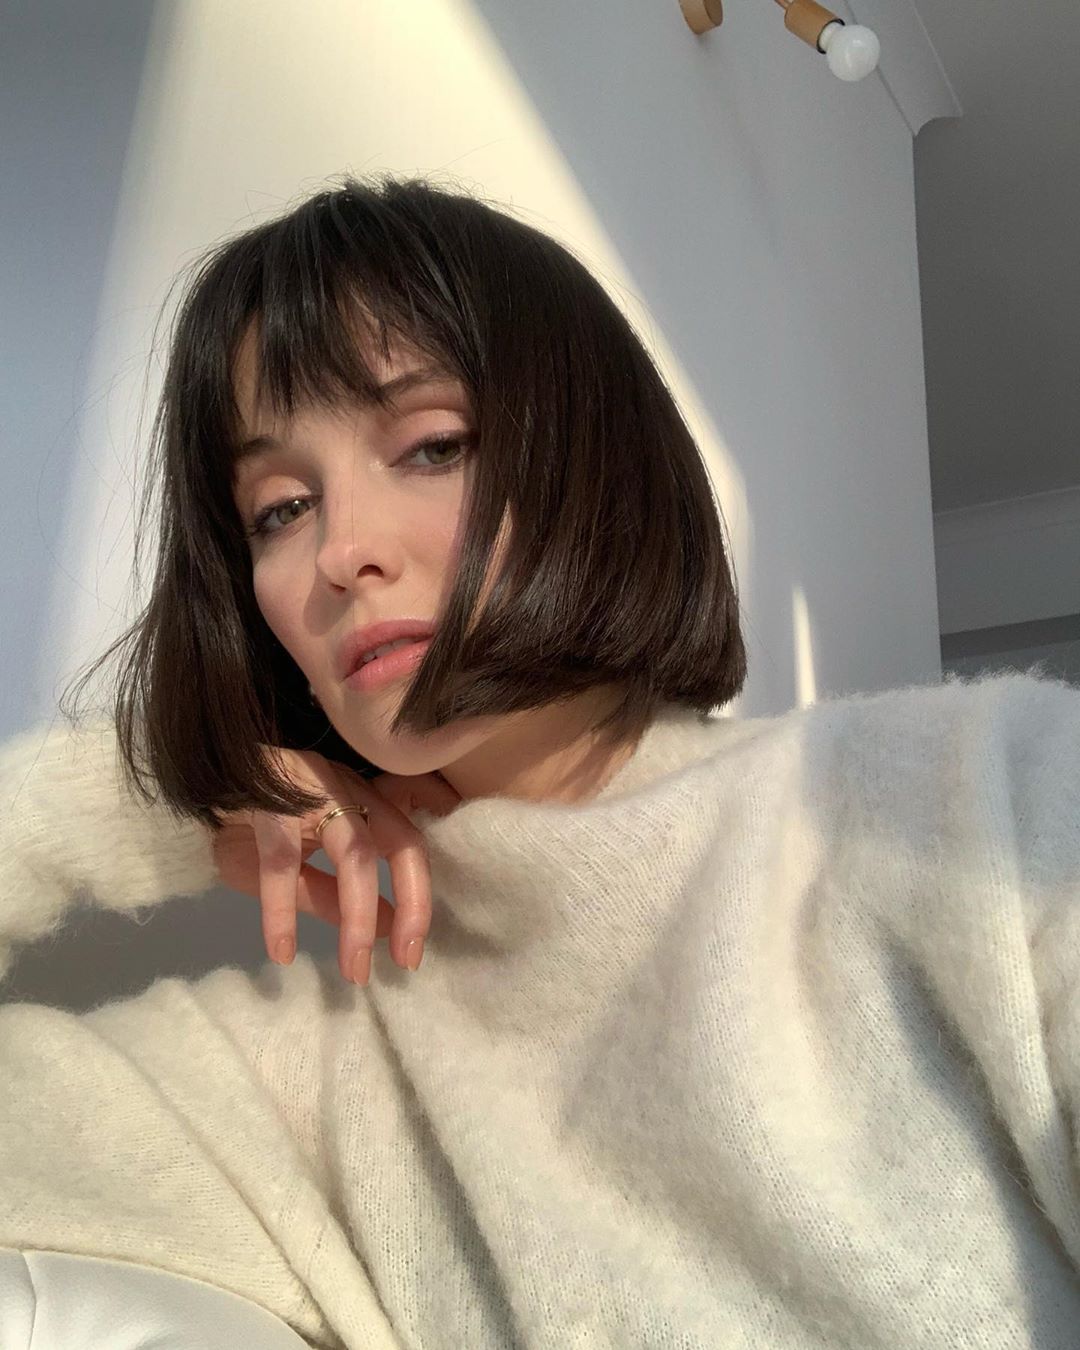 Bohyně čistého minimalismu ze světa Instagramu: Karolina Óscik-Alama